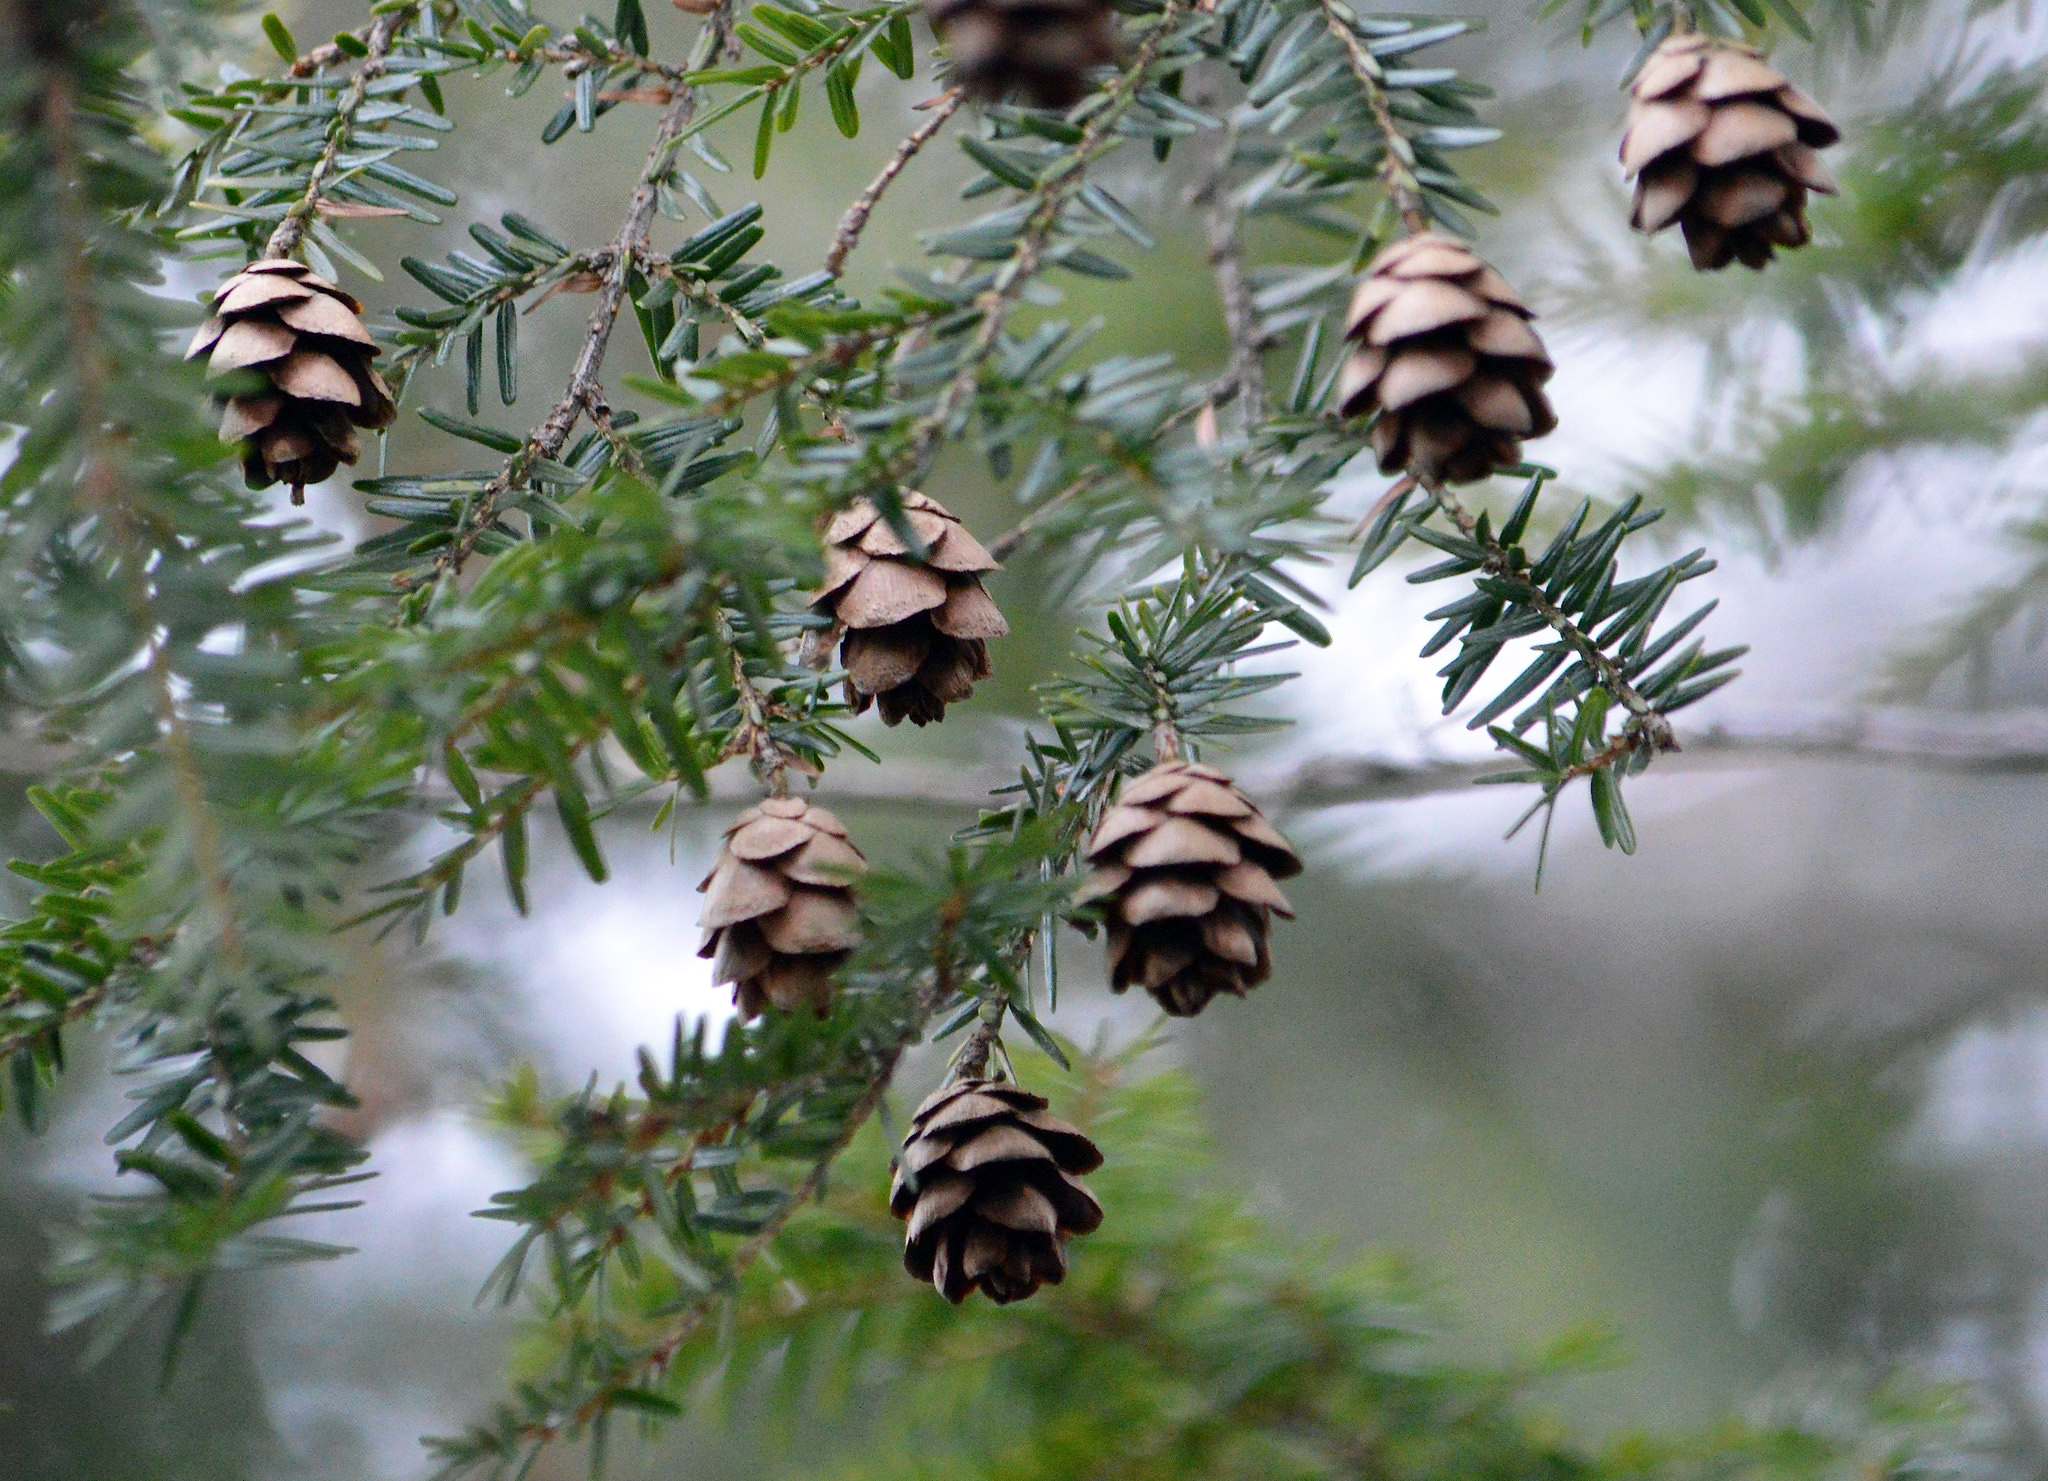 Hemlock cones hanging from branches. (photo © Scott Hecker)